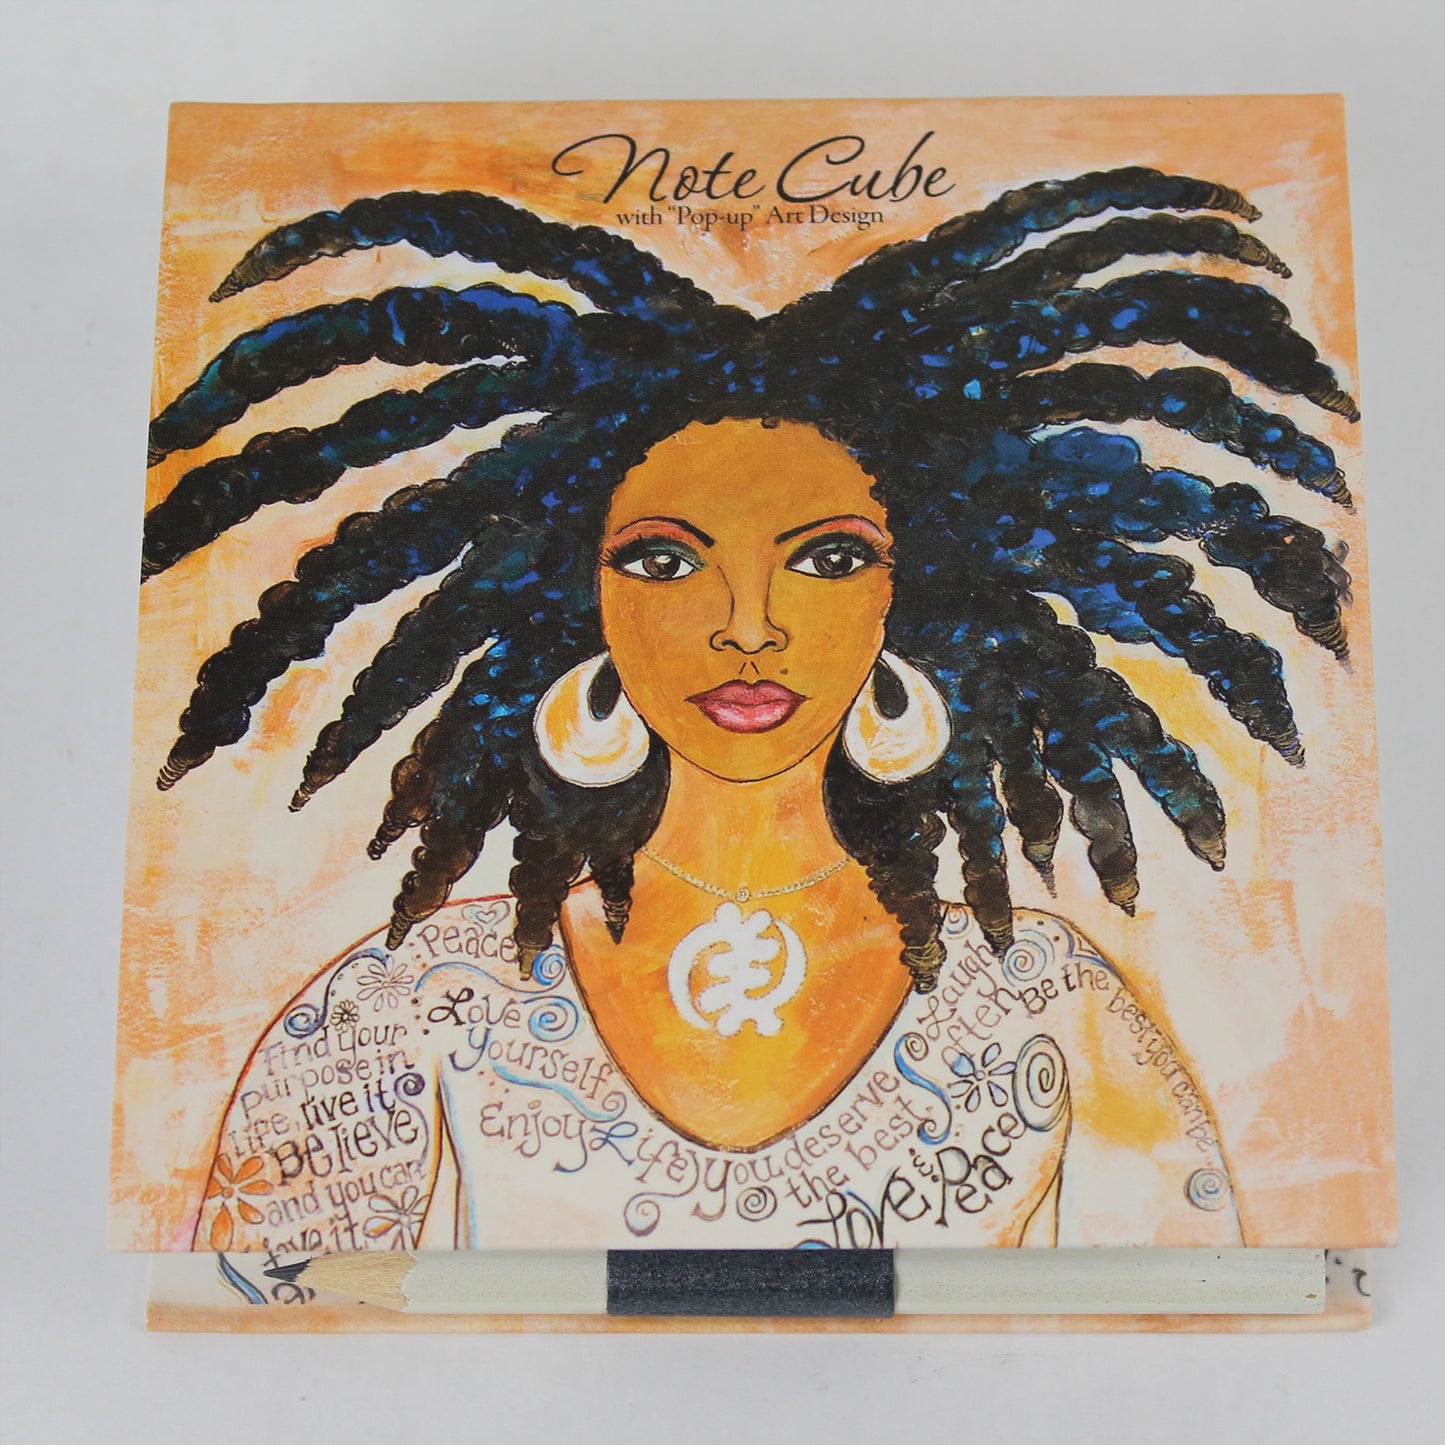 Nubian Queen Pop Up Note Cube